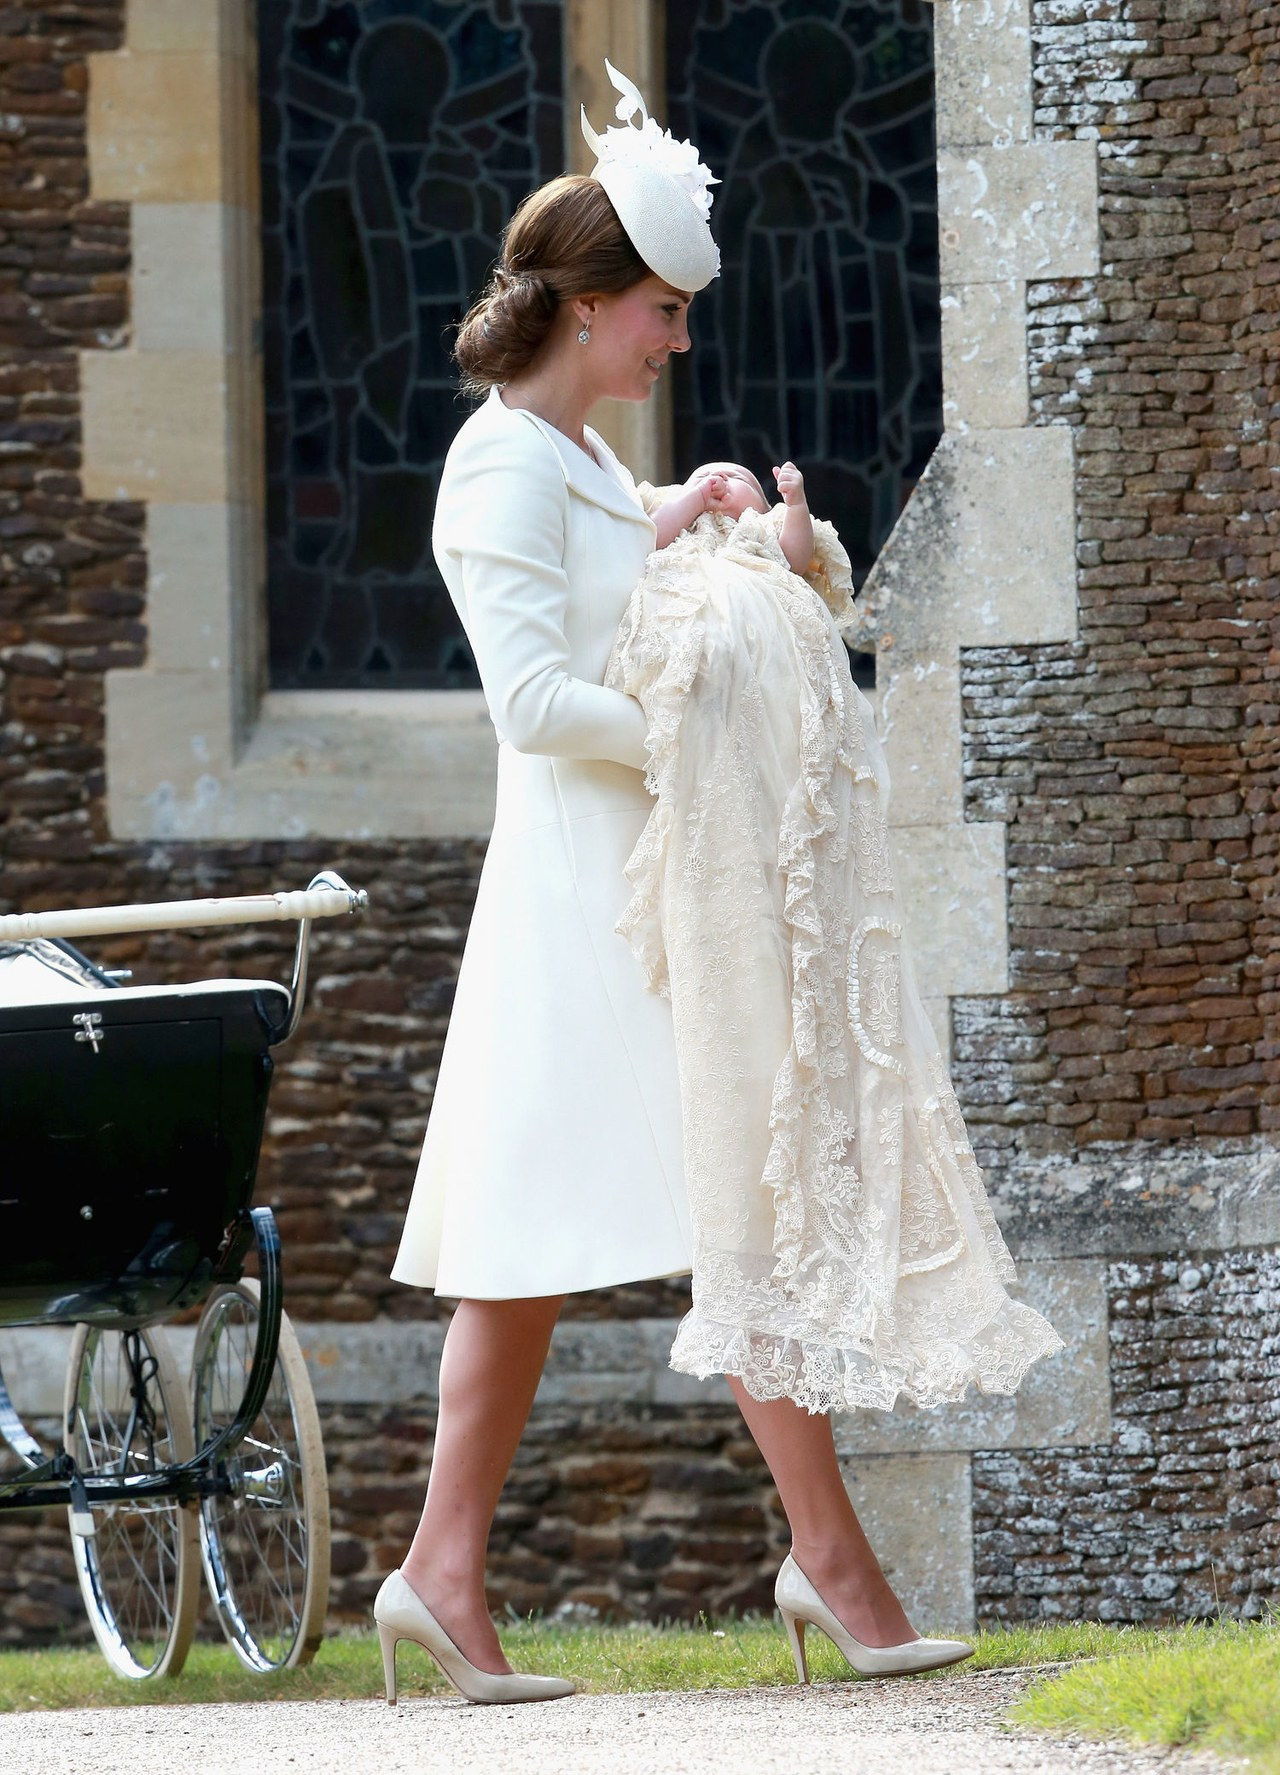 凯特 middleton white alexander mcqueen dress princess charlotte christening